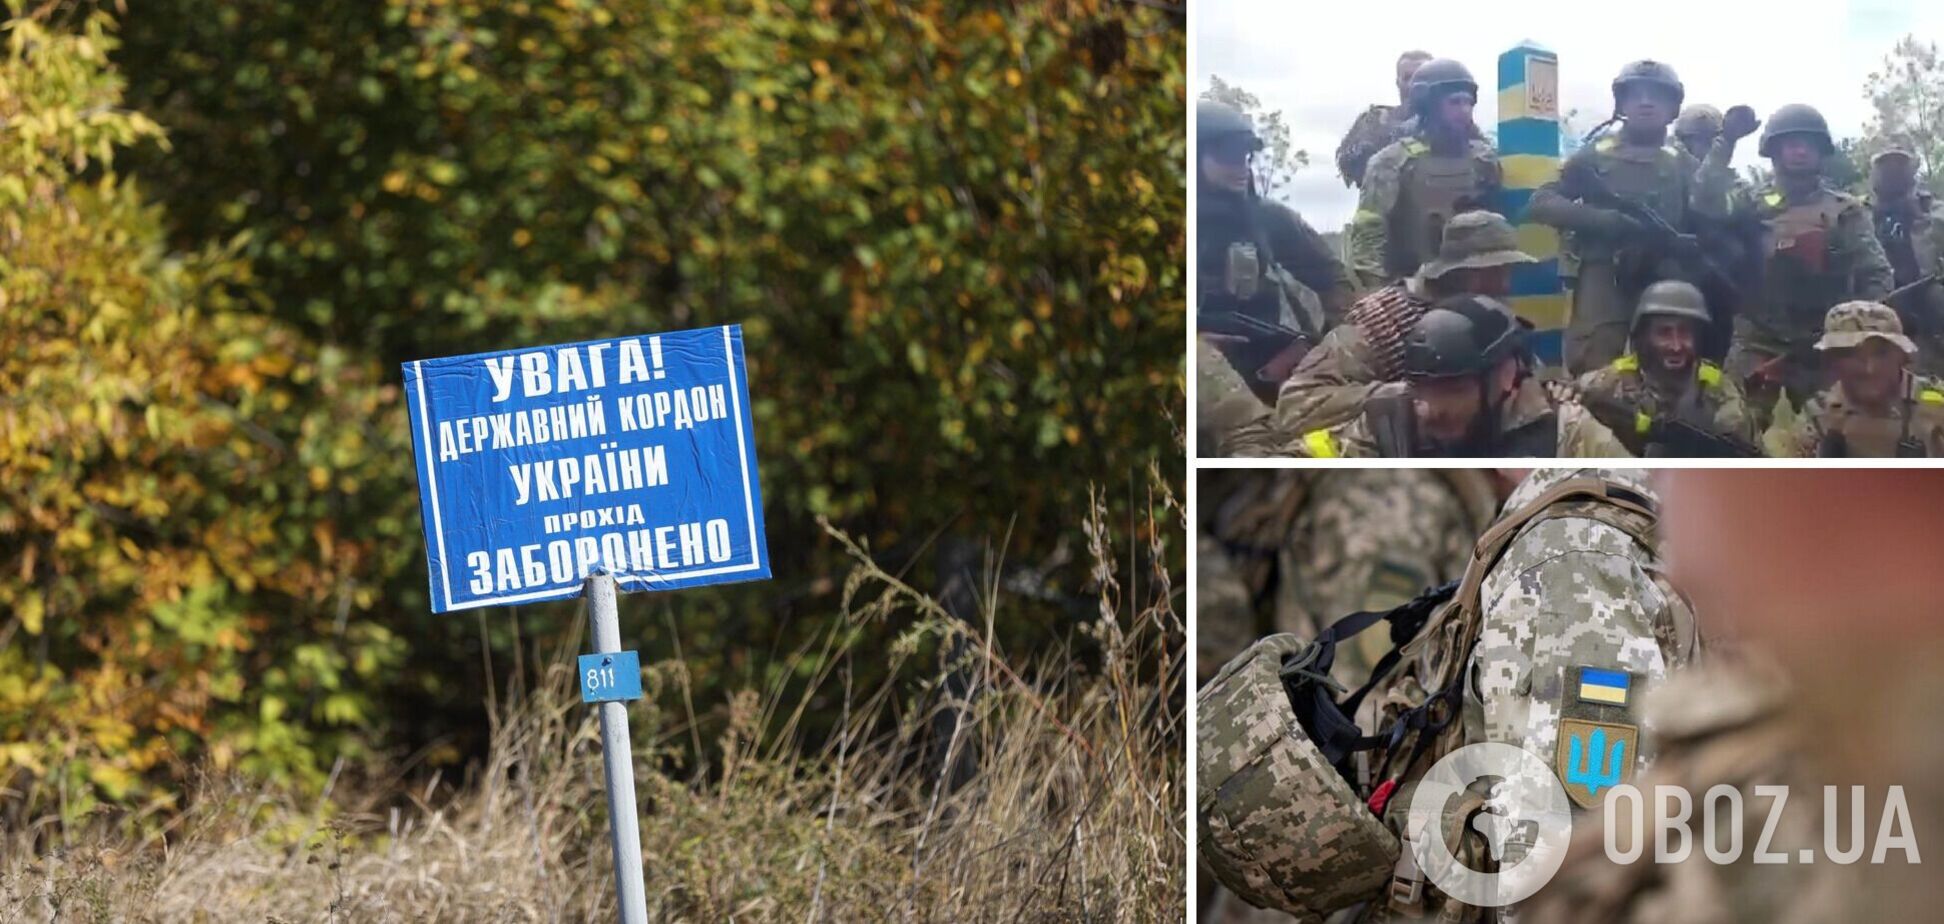 Українські військові вибили ворога та вийшли на державний кордон України та РФ біля Харкова. Відео